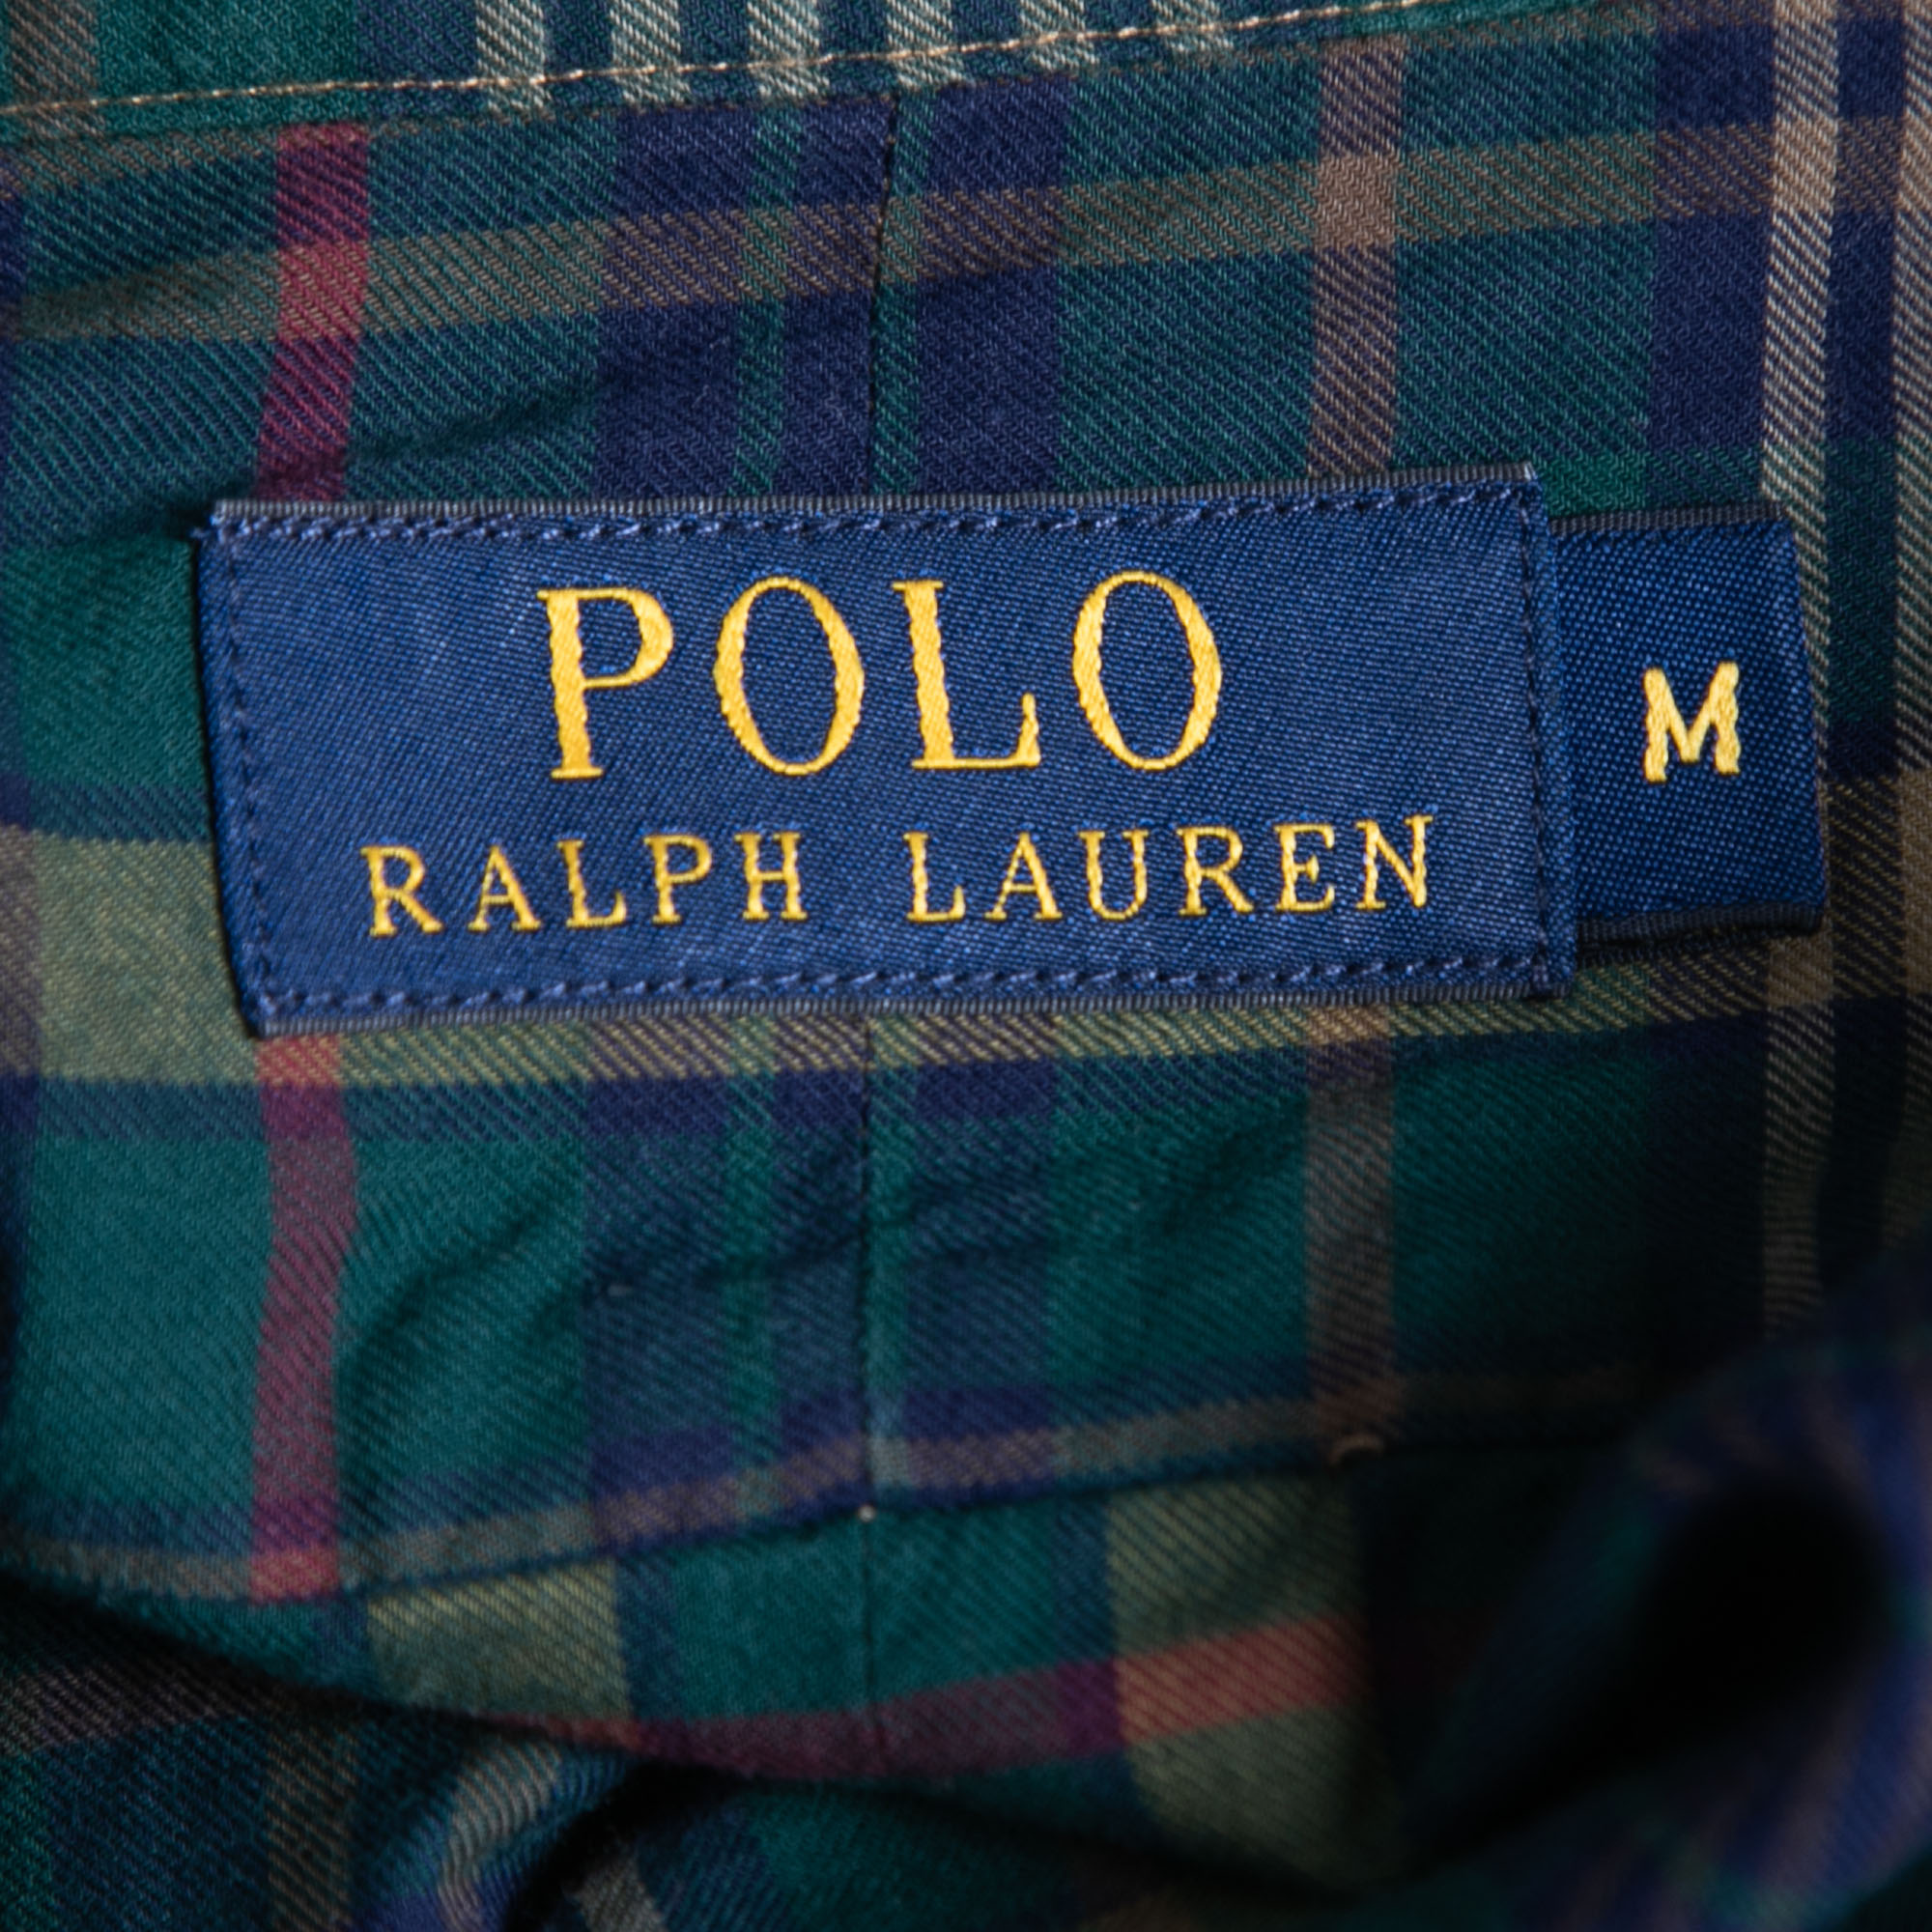 Polo Ralph Lauren Green/Navy Blue Plaid Cotton Button Front Full Sleeve Shirt M